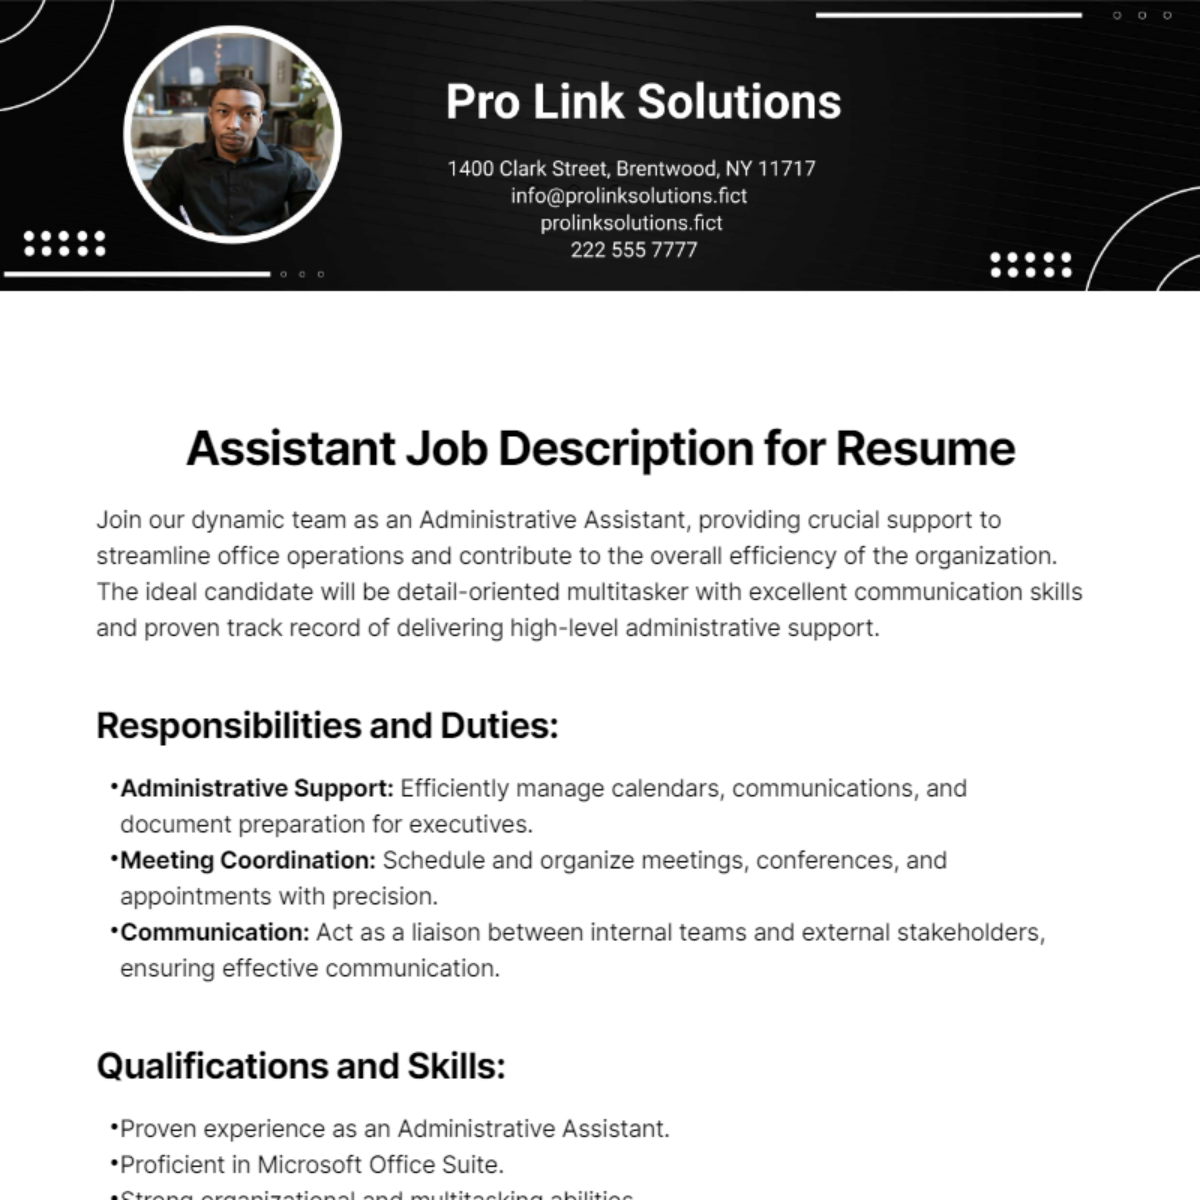 Assistant Job Description for Resume Template